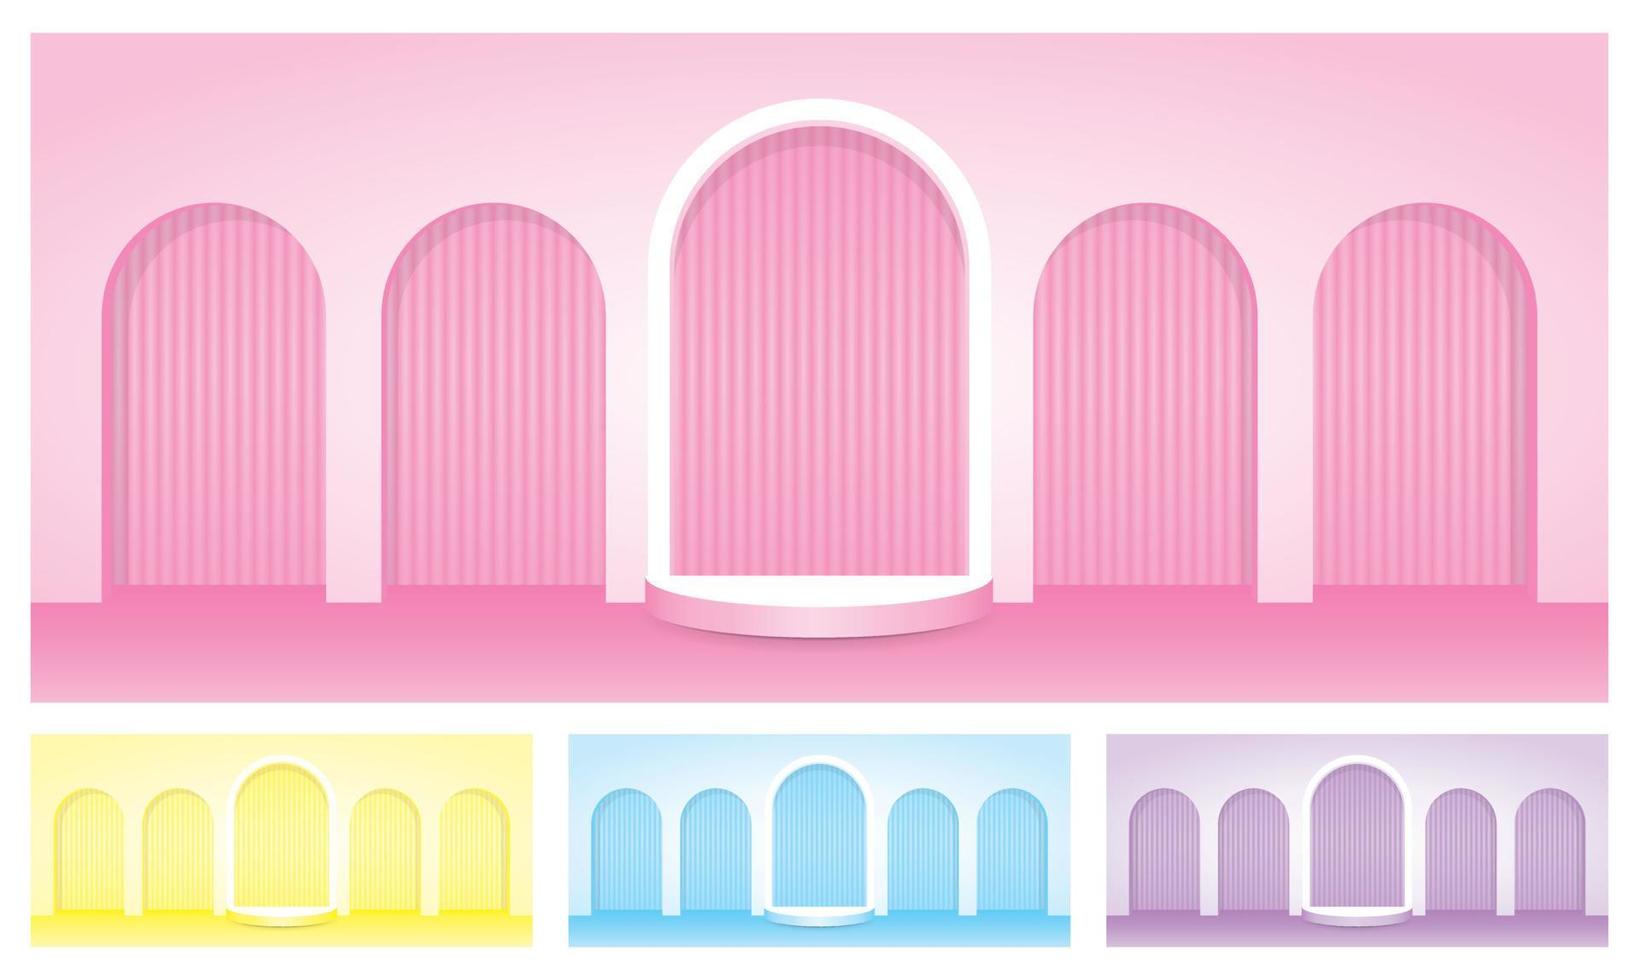 parede de arco pastel doce com exibição em semicírculo etapa 3d ilustração vetorial coleção de fundo para colocar seu objeto vetor